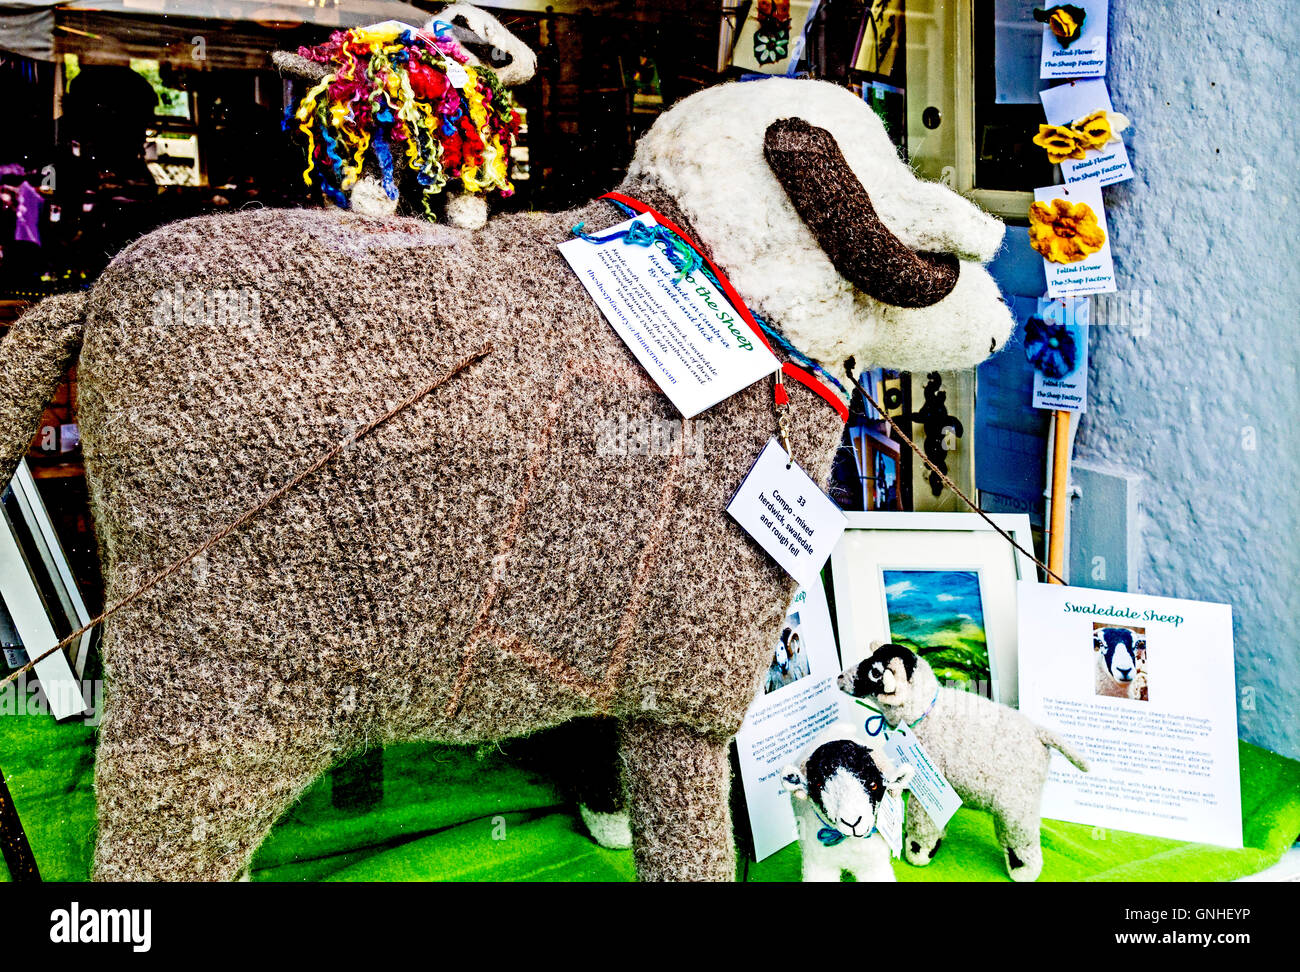 Pecore di lana sul display nella vetrina di un negozio. Foto Stock